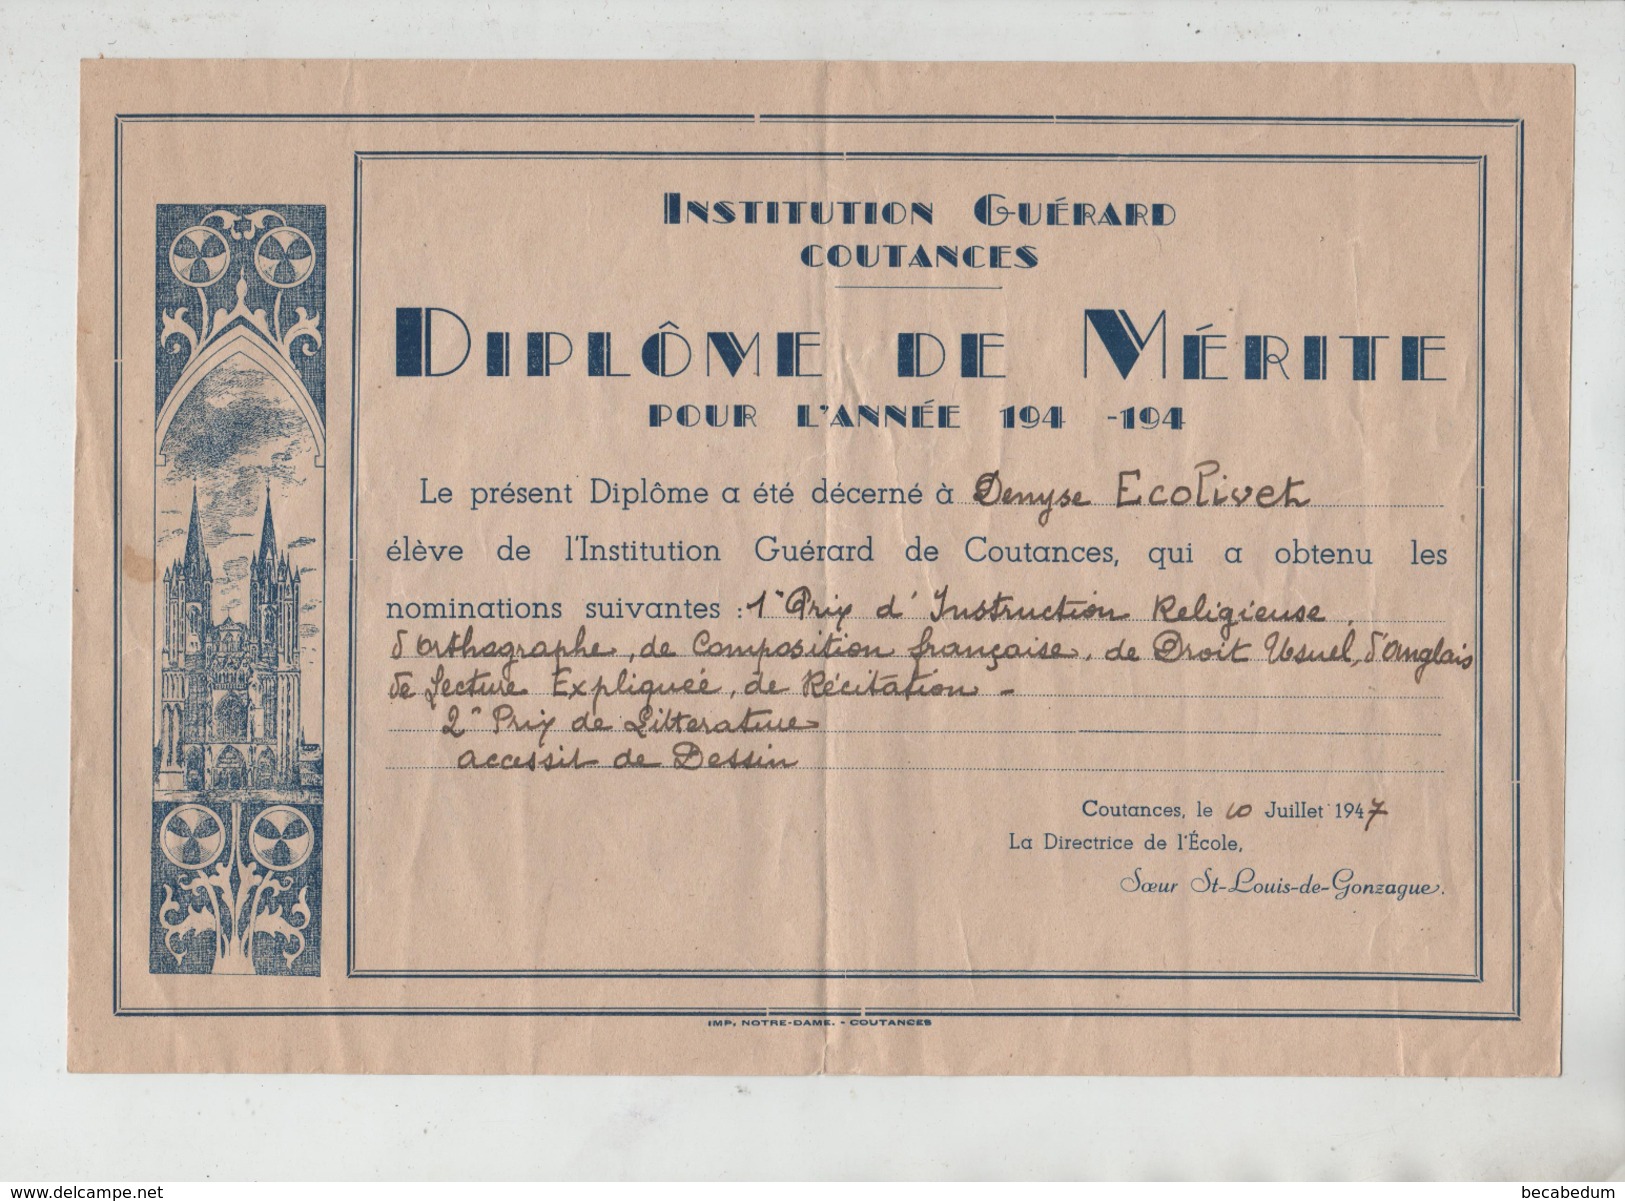 Institution Guérard Coutances Diplôme De Mérite 1947 Soeur St Louis De Gonzague - Diploma & School Reports